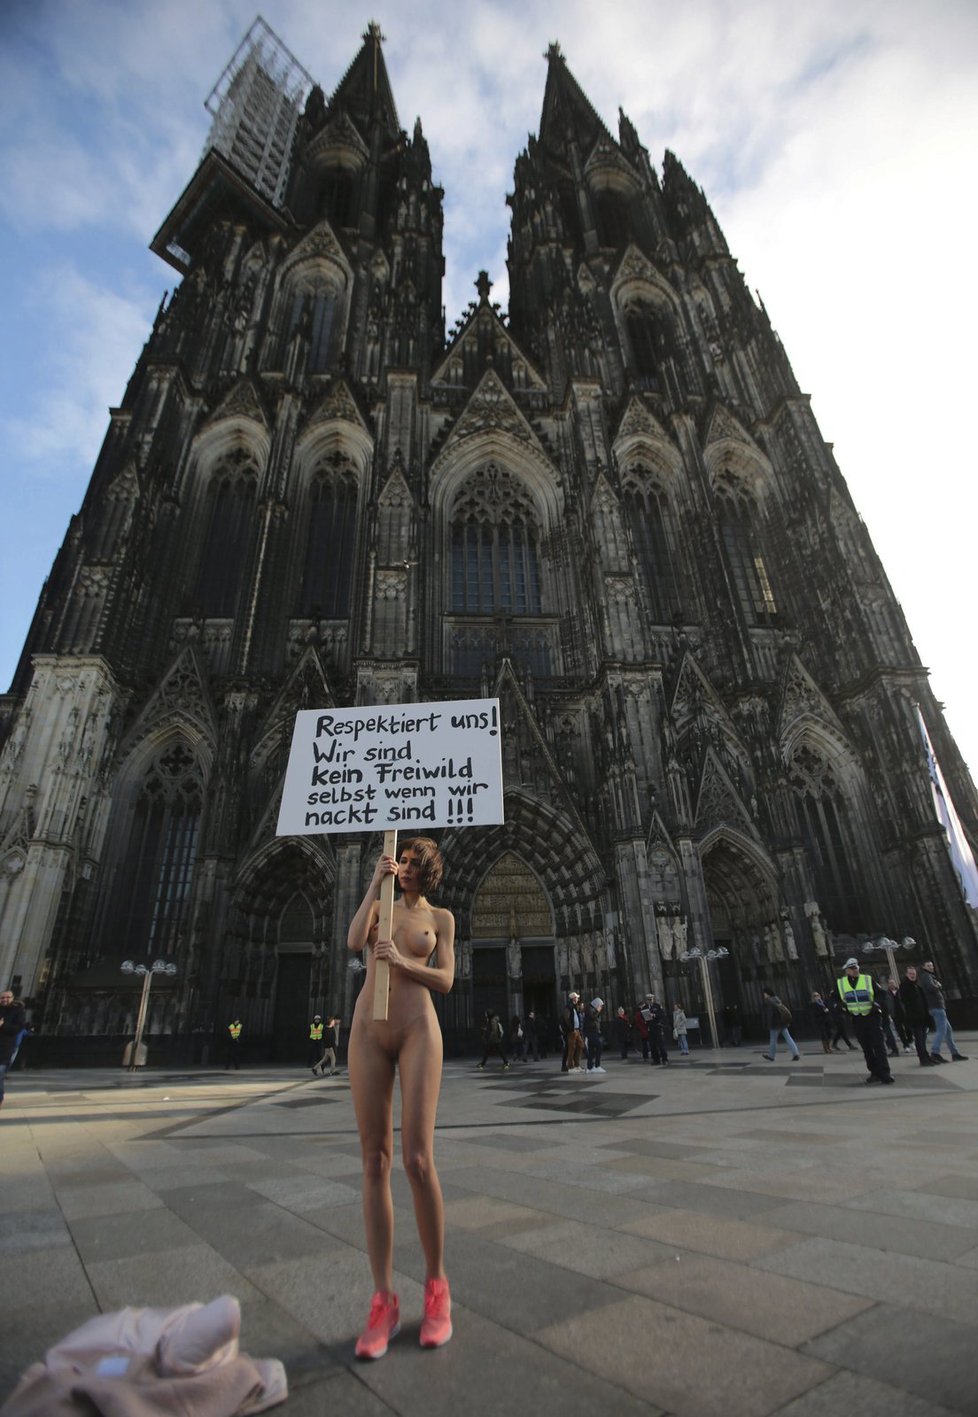 Švýcarská umělkyně Milo Moire s transparentem, se kterým nahá volala po respektu k ženám. Postavila se při tom v pátek před katedrálu v Kolíně nad Rýnem.